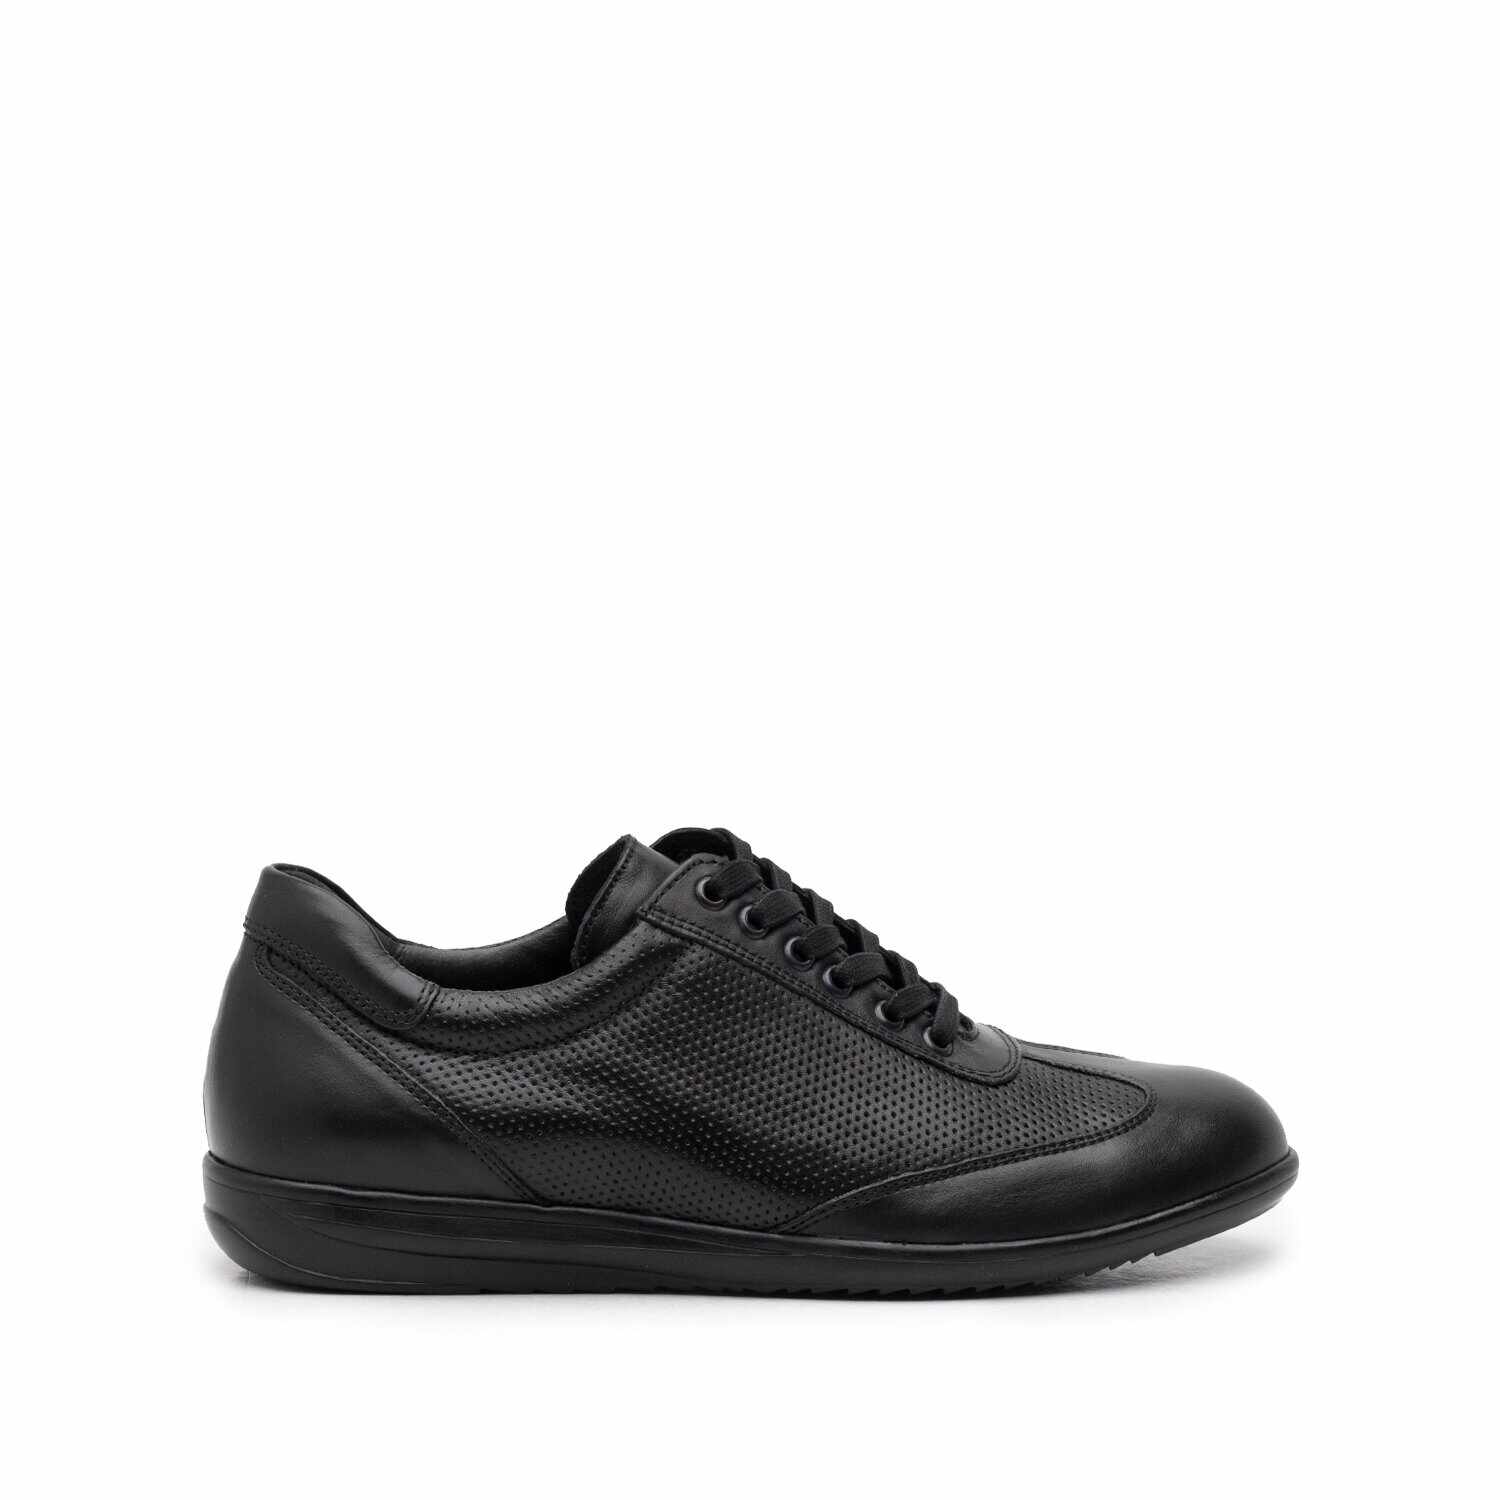 Pantofi casual/sport barbati din piele naturala, Leofex - 518 negru box